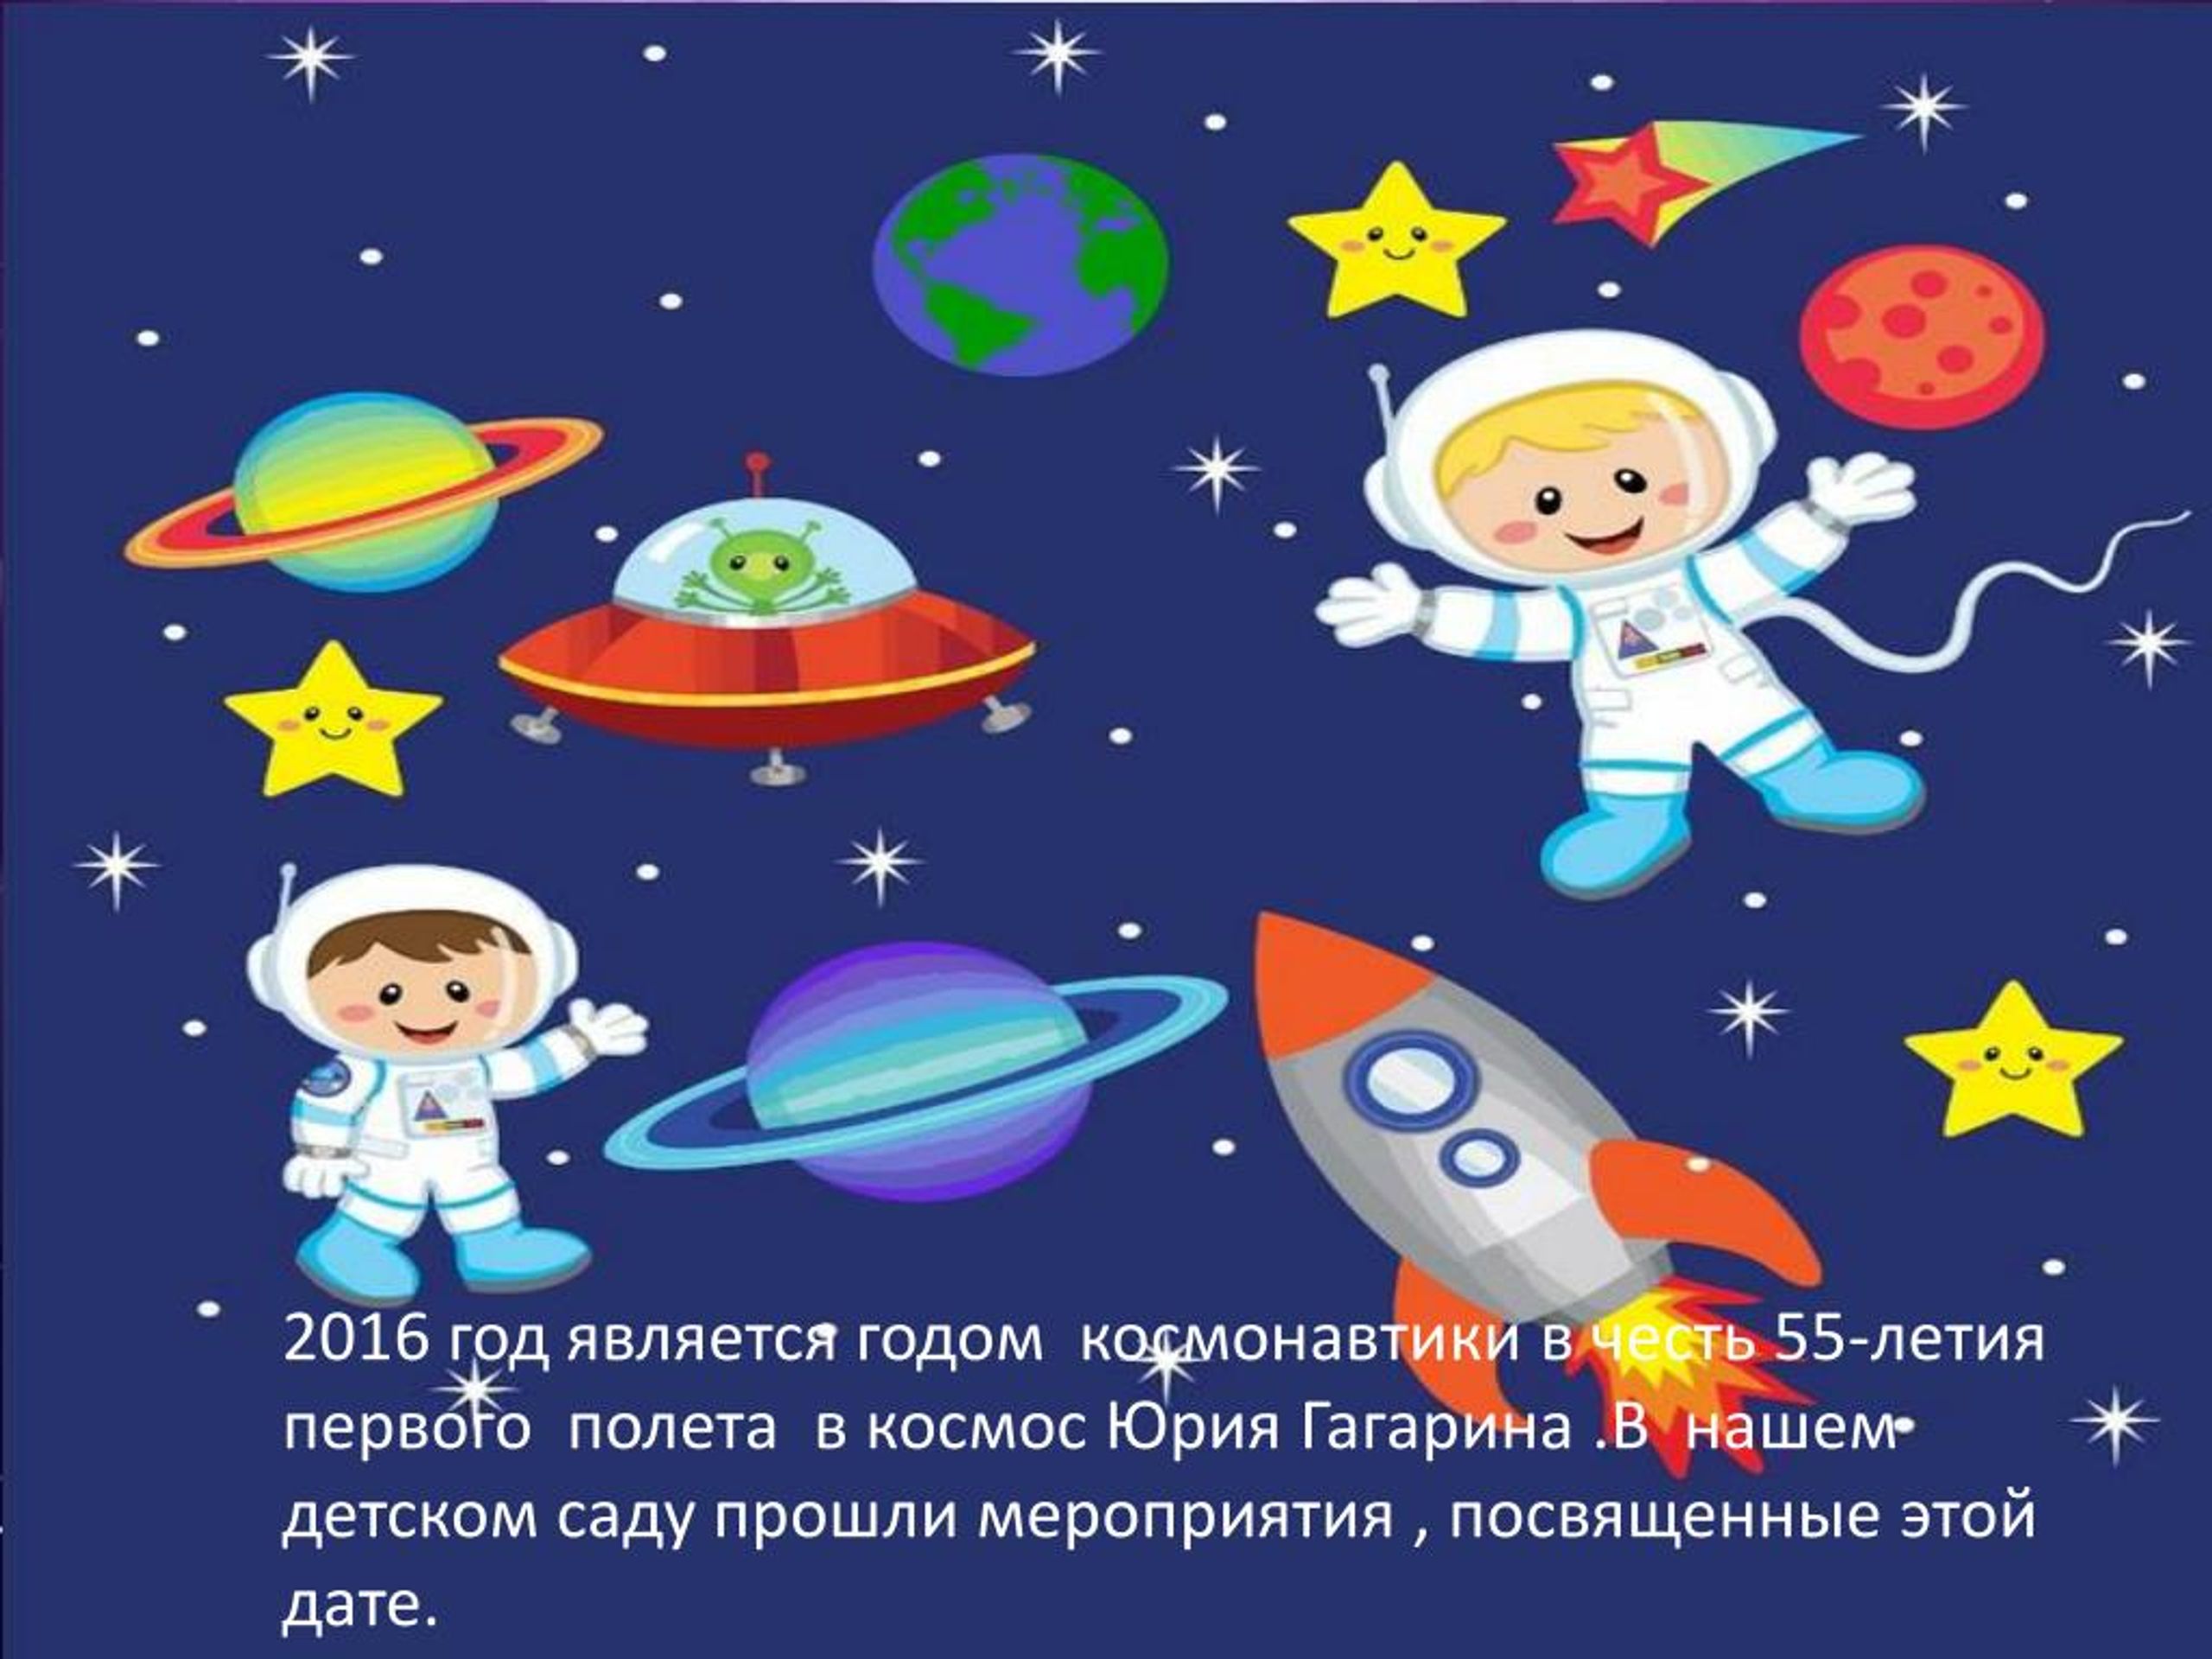 Космонавт картинки для детей дошкольного возраста. Детям о космосе. Космос для детей дошкольного возраста. Космический ребенок.